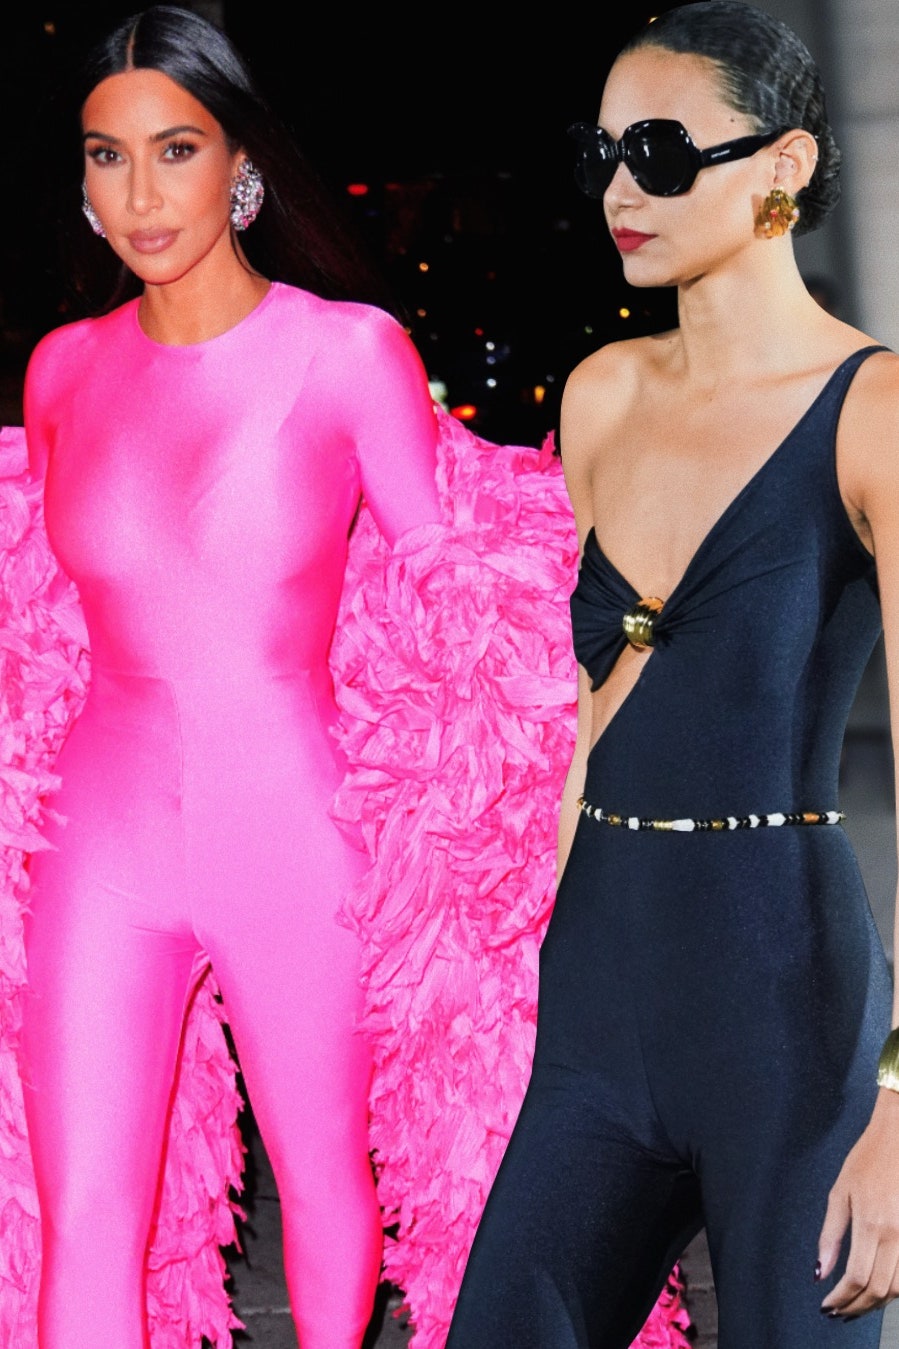 Кэтсьют на Ким Кардашьян в эфире SNL где купить облегающий комбинезон самый модный предмет сезона весналето 2022